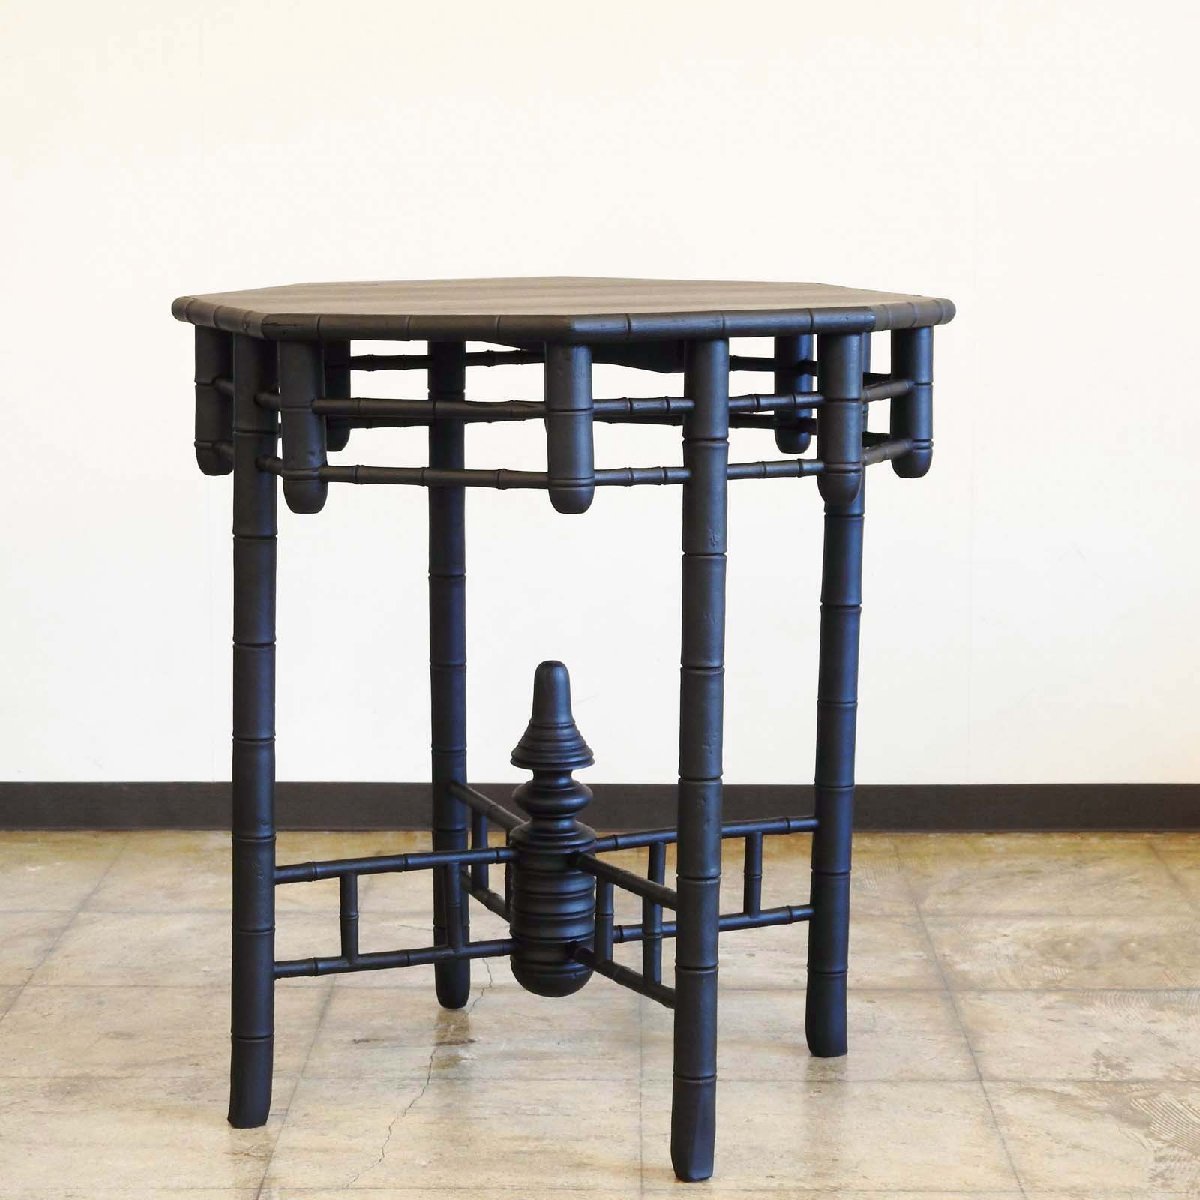 ふるい 黒色 オリエンタルな意匠のテーブル / 古道具 無垢材 センターテーブル カウンター 机 展示台 HK-a-01640